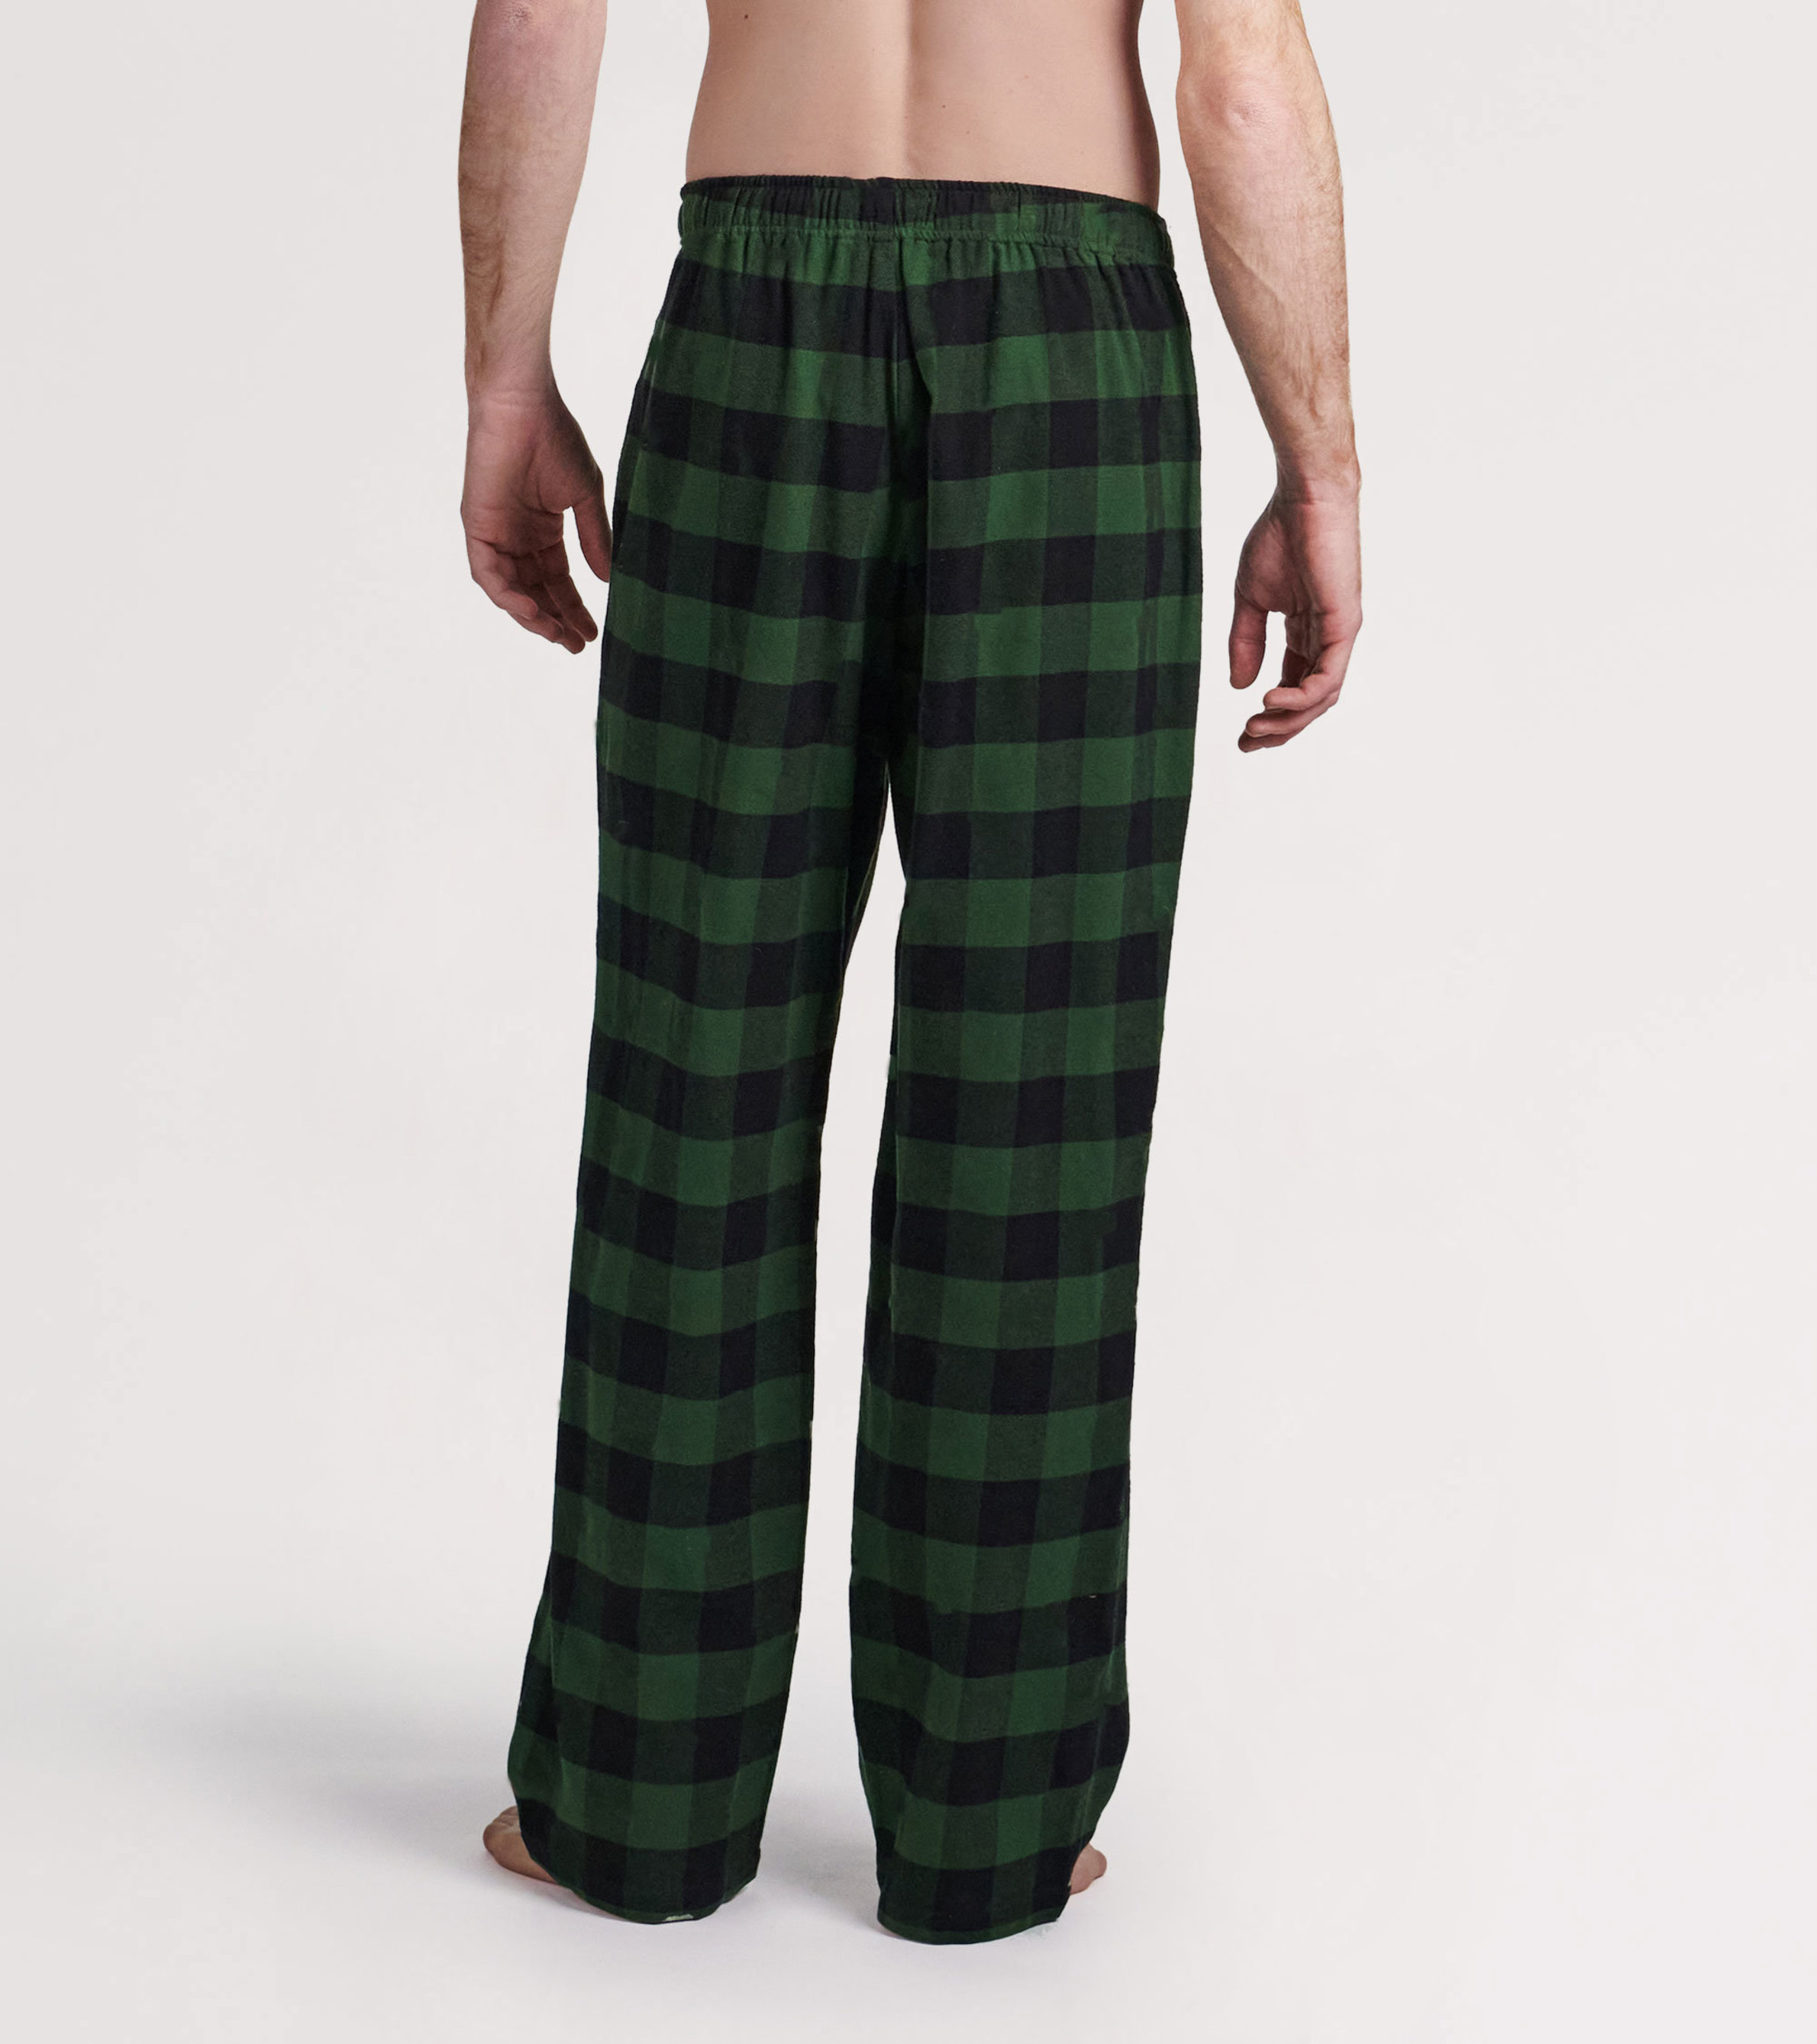 Black Plaid Men's Flannel PJ Pants – Lazy One